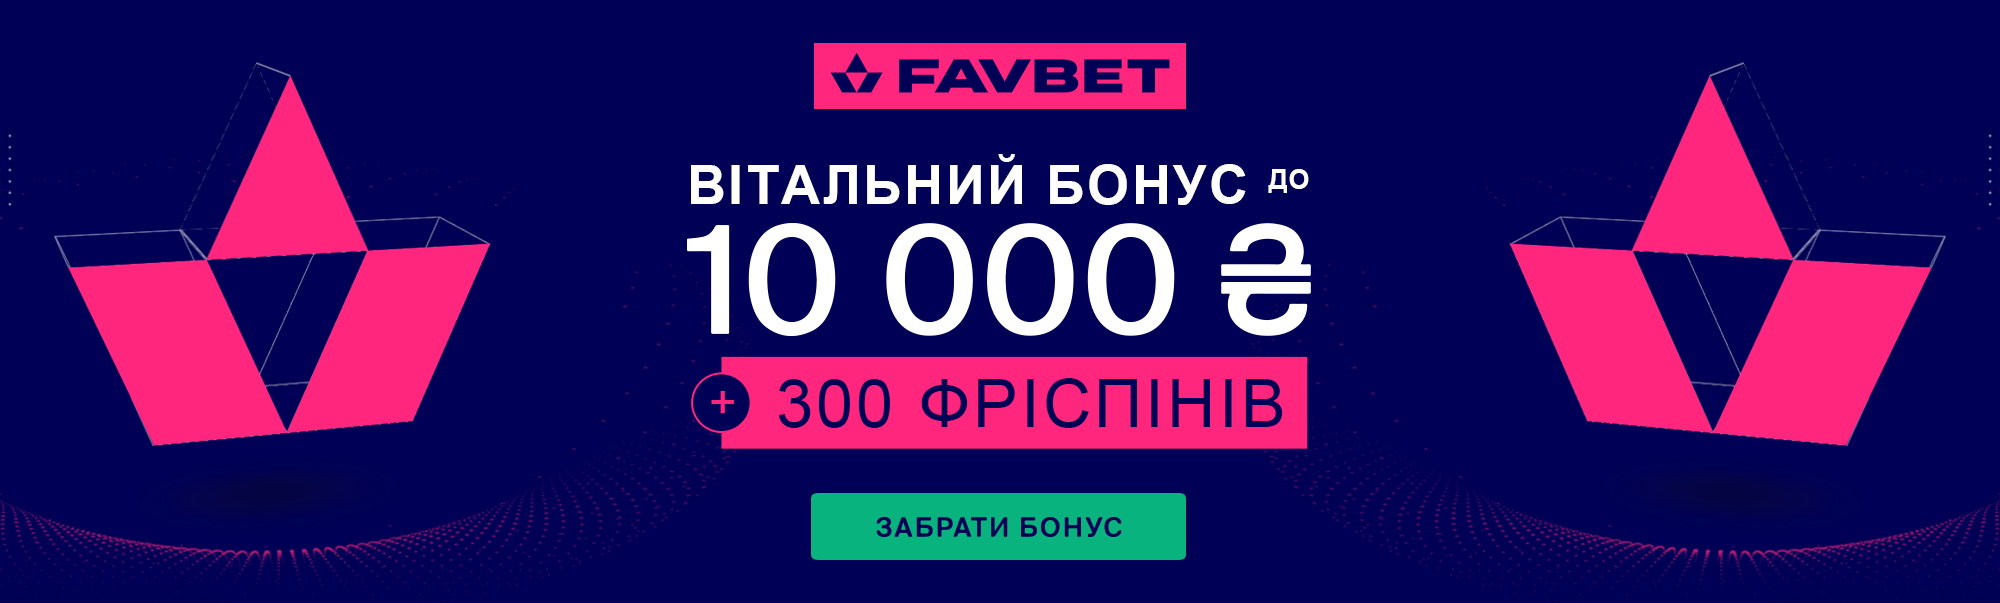 favbet-new-banner2